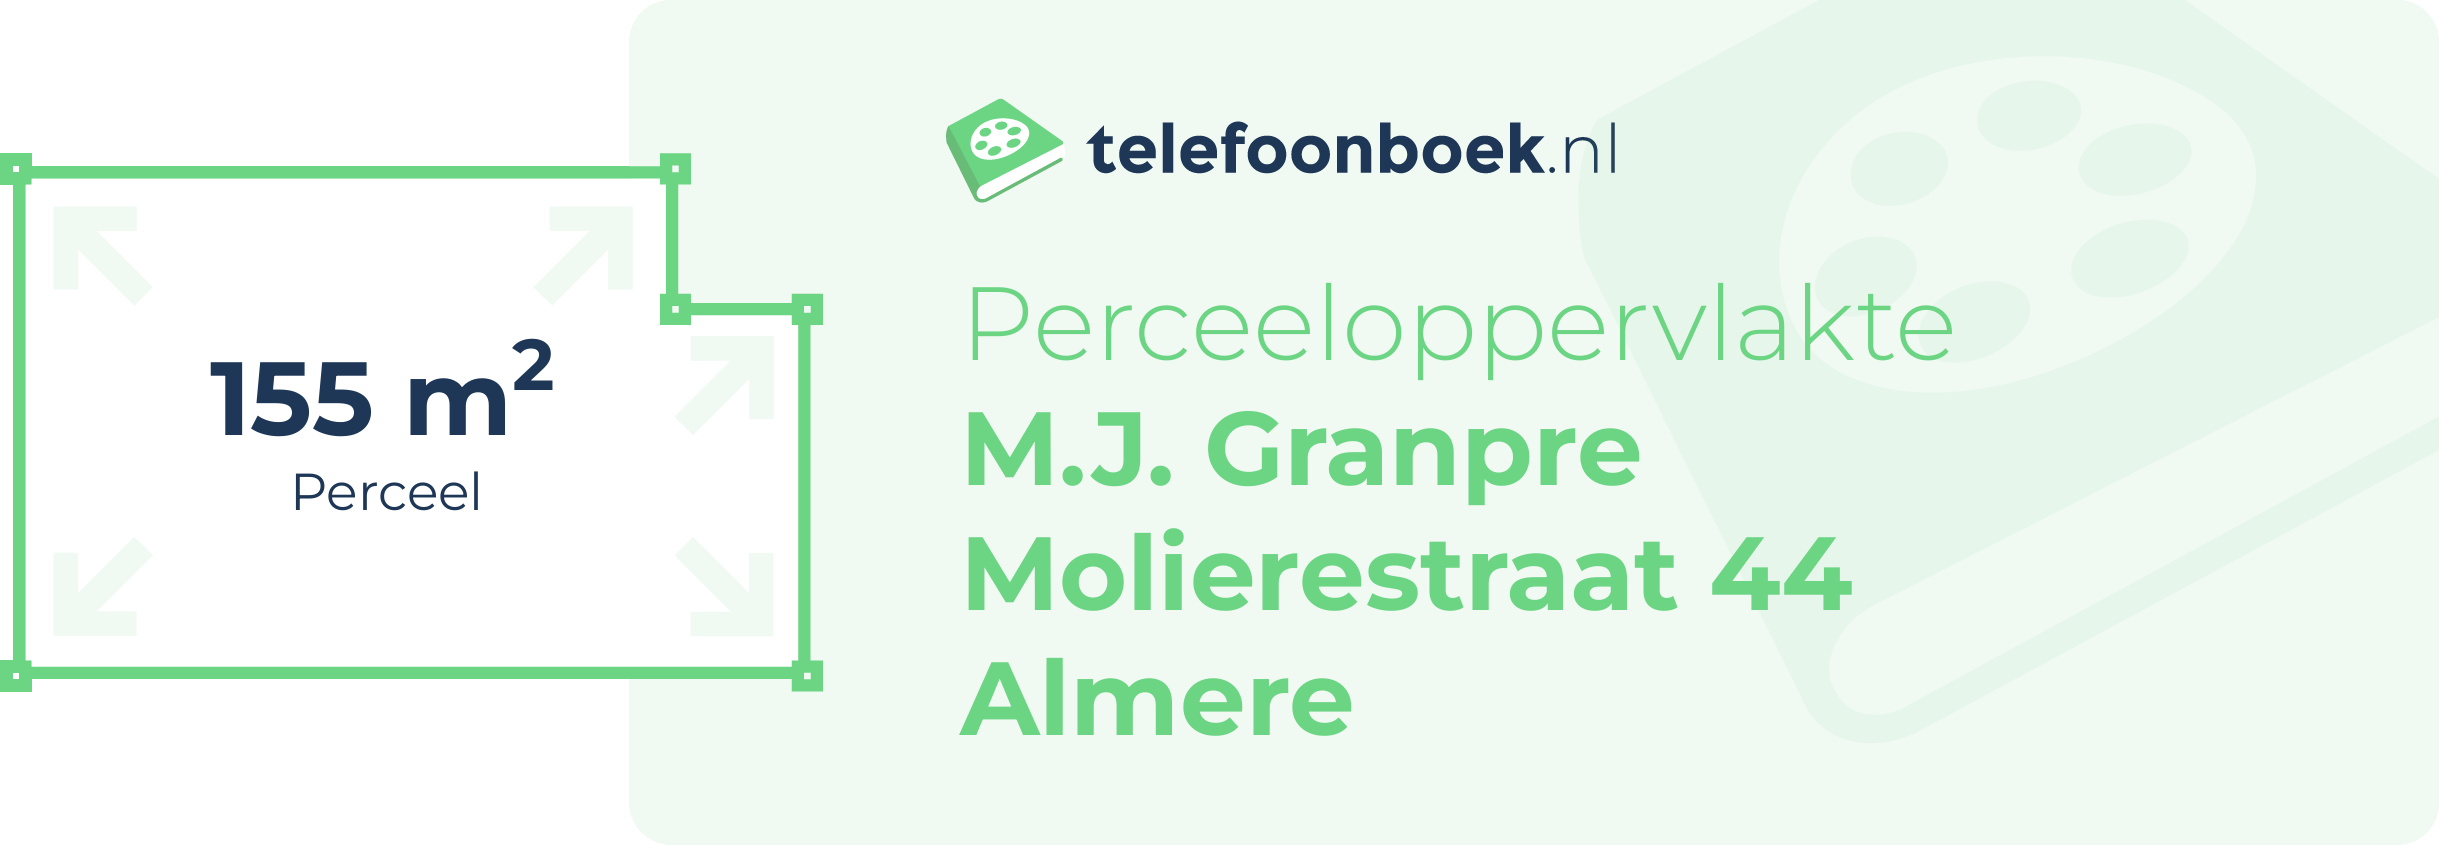 Perceeloppervlakte M.J. Granpre Molierestraat 44 Almere